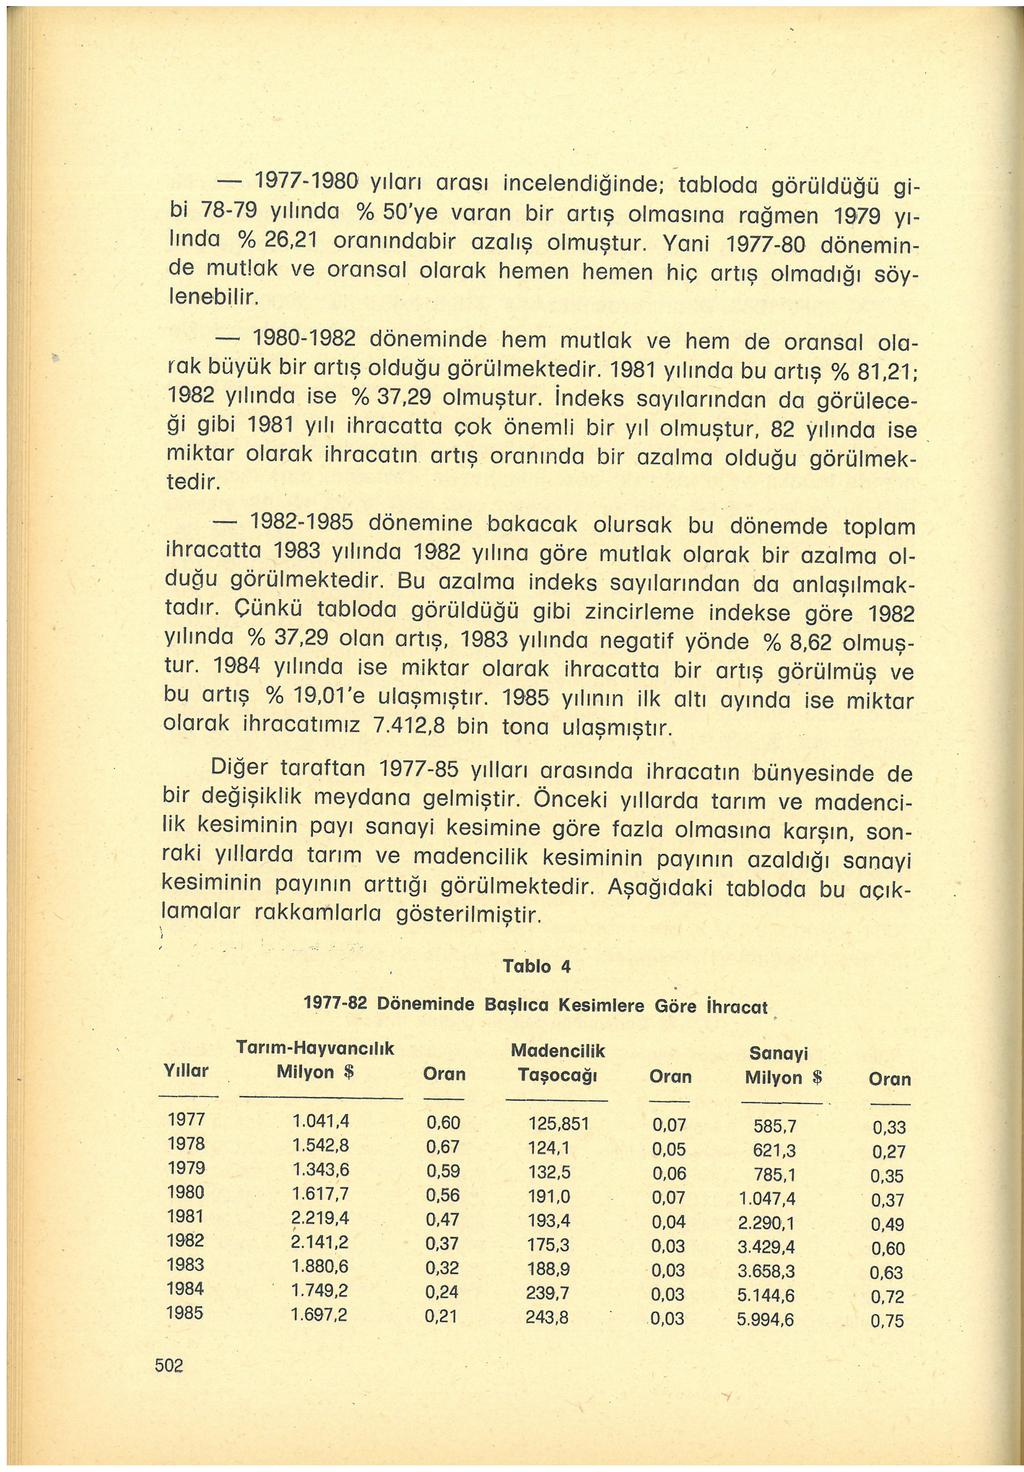 - - 1977-1980 yılan arası incelendiğinde; tabloda görüldüğü gibi 78-79 yılinda % 50'ye varan bir artış olmasına rağmen rn79 yı lında % 26,21 oranındabir azalış olmuştur.